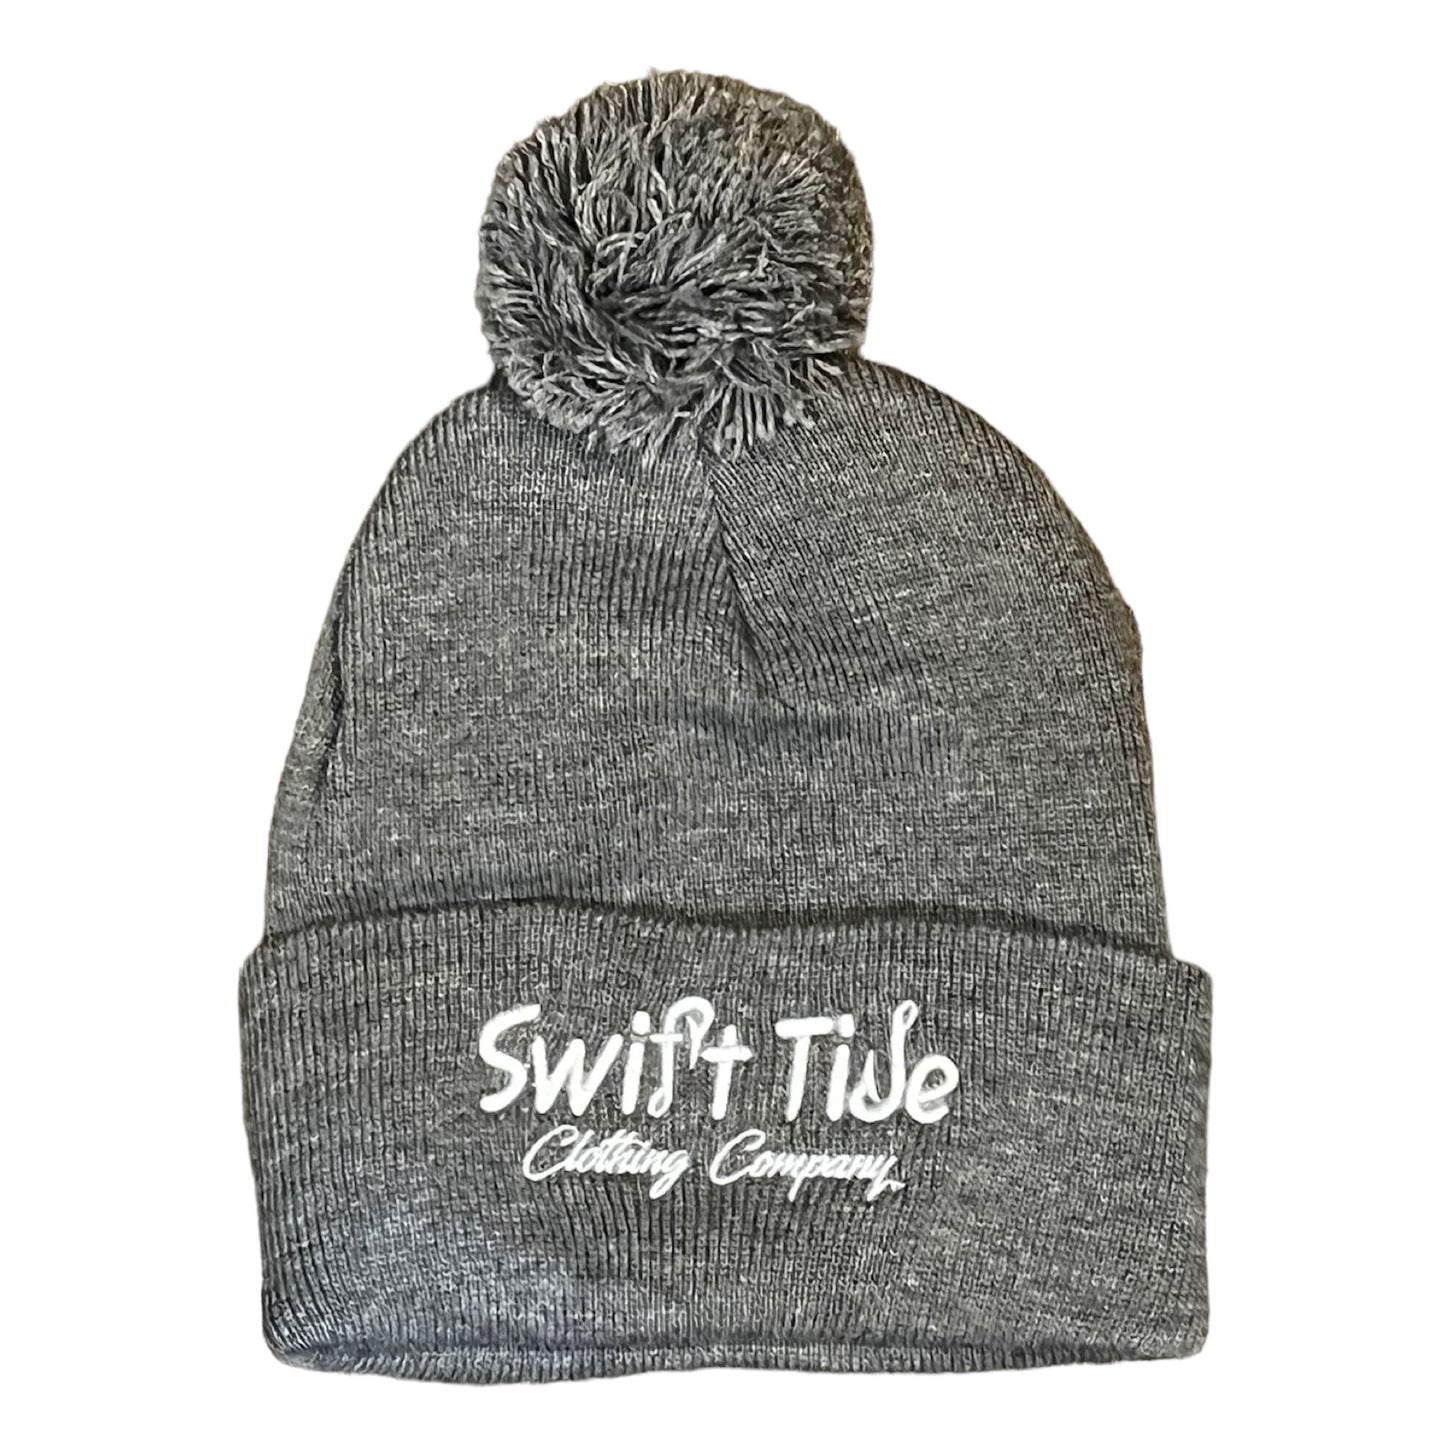 Swift Tide 12” Pom-Pom Beanie - Swift Tide Clothing Company